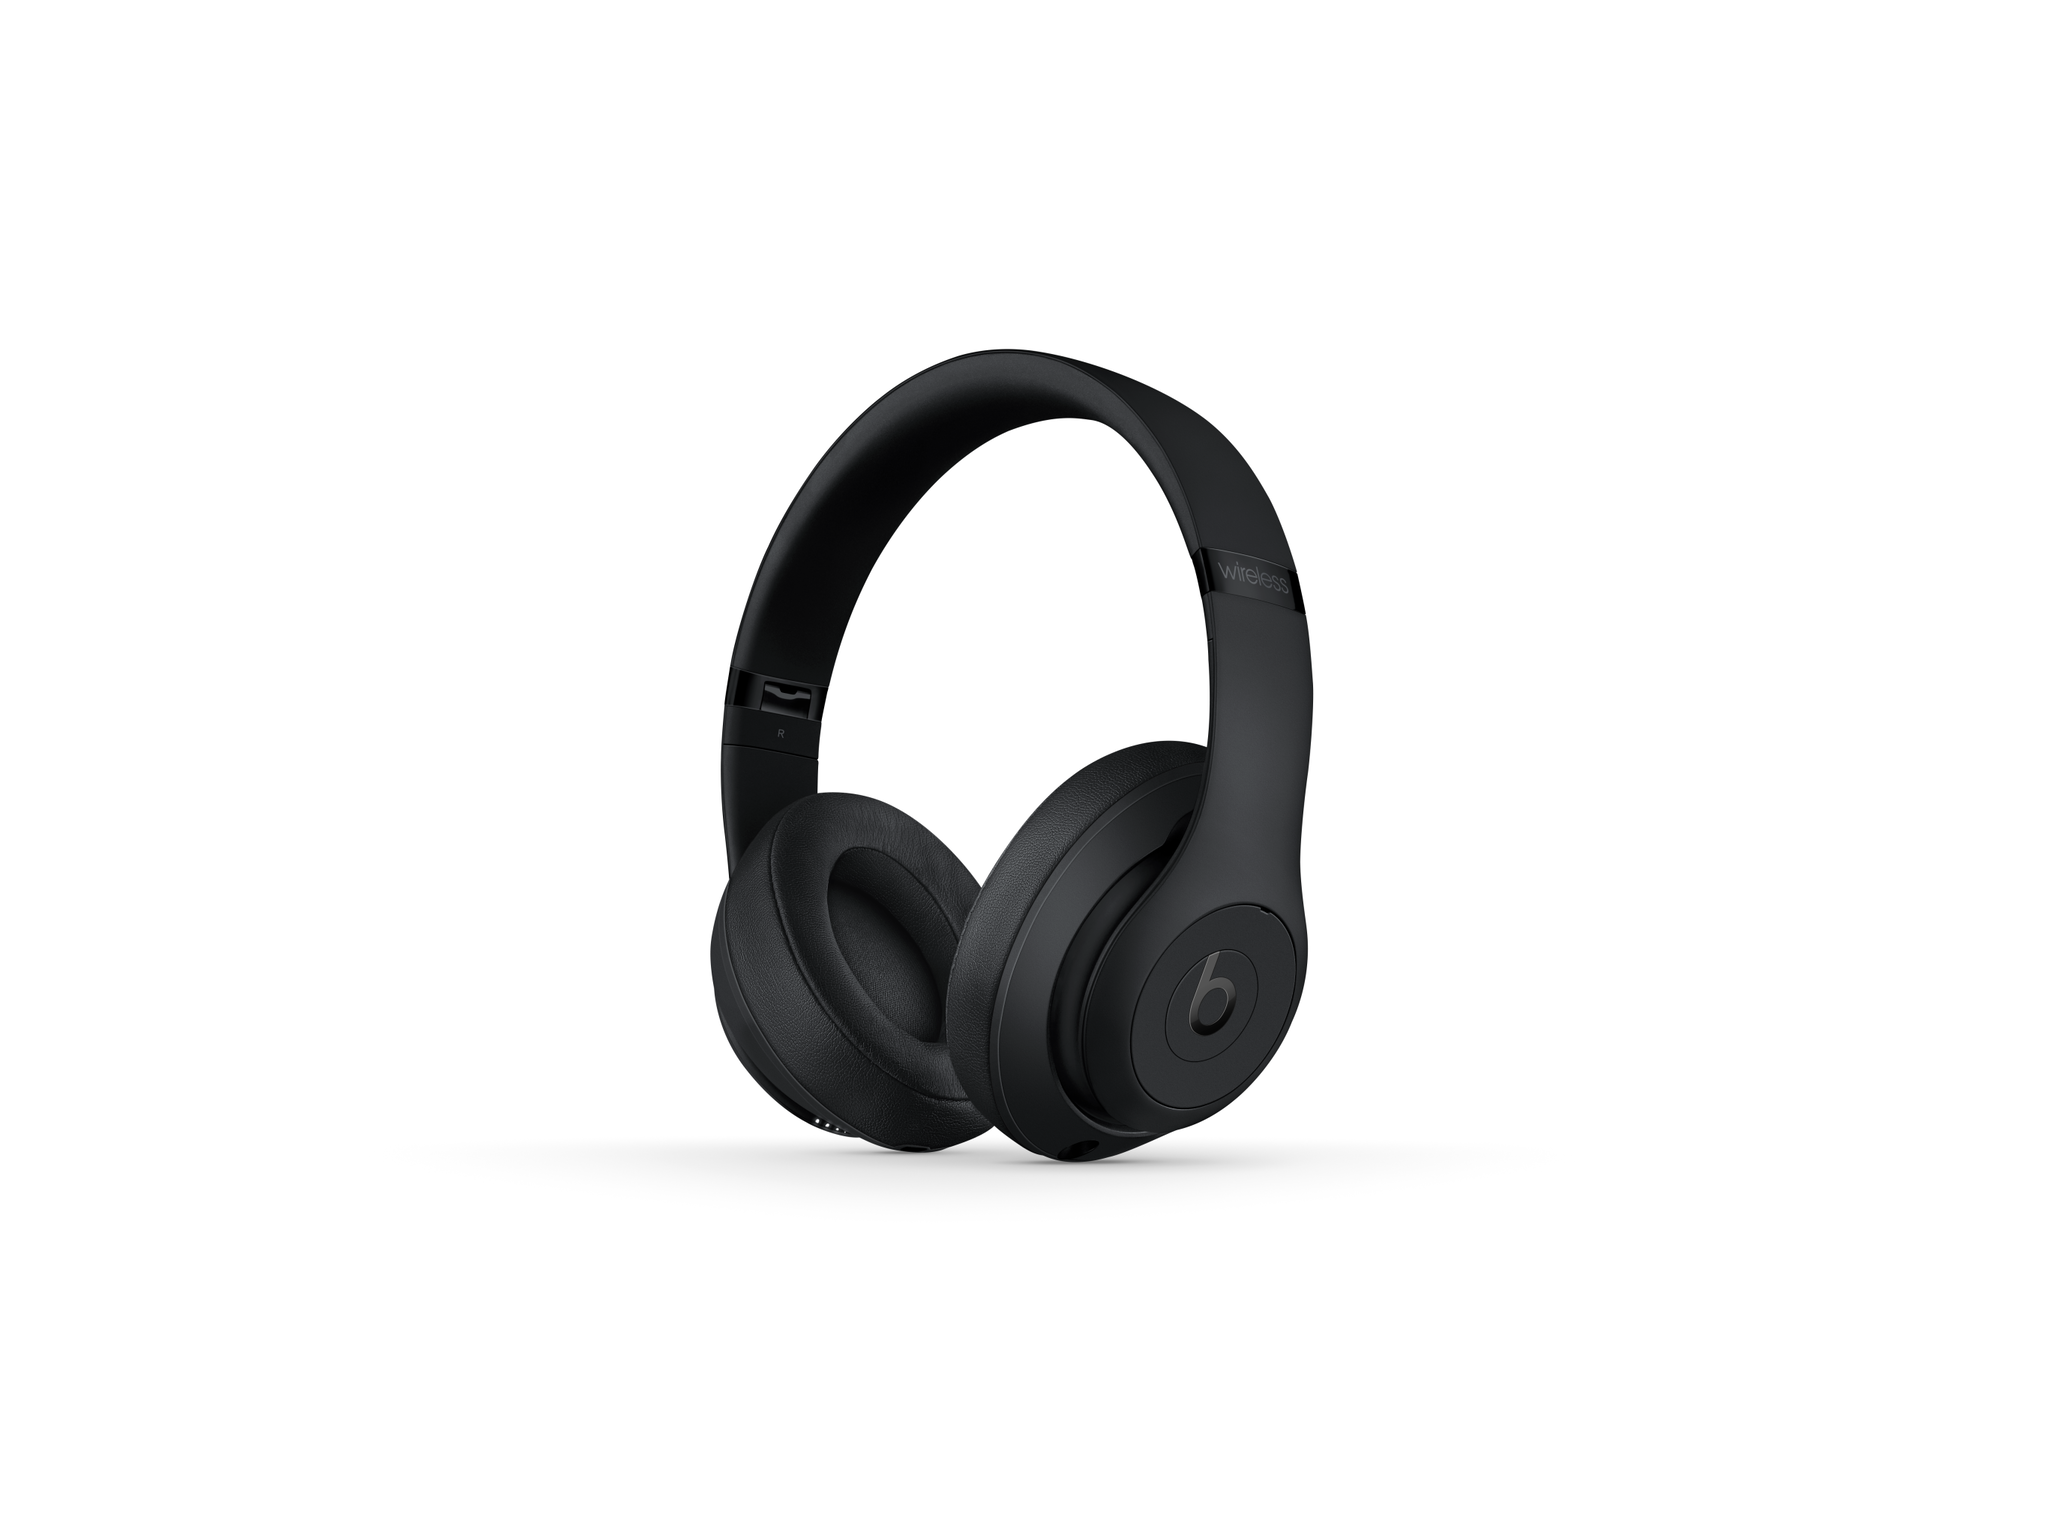 Picture of Beats Studio3 Wrlss OE Headphones Black